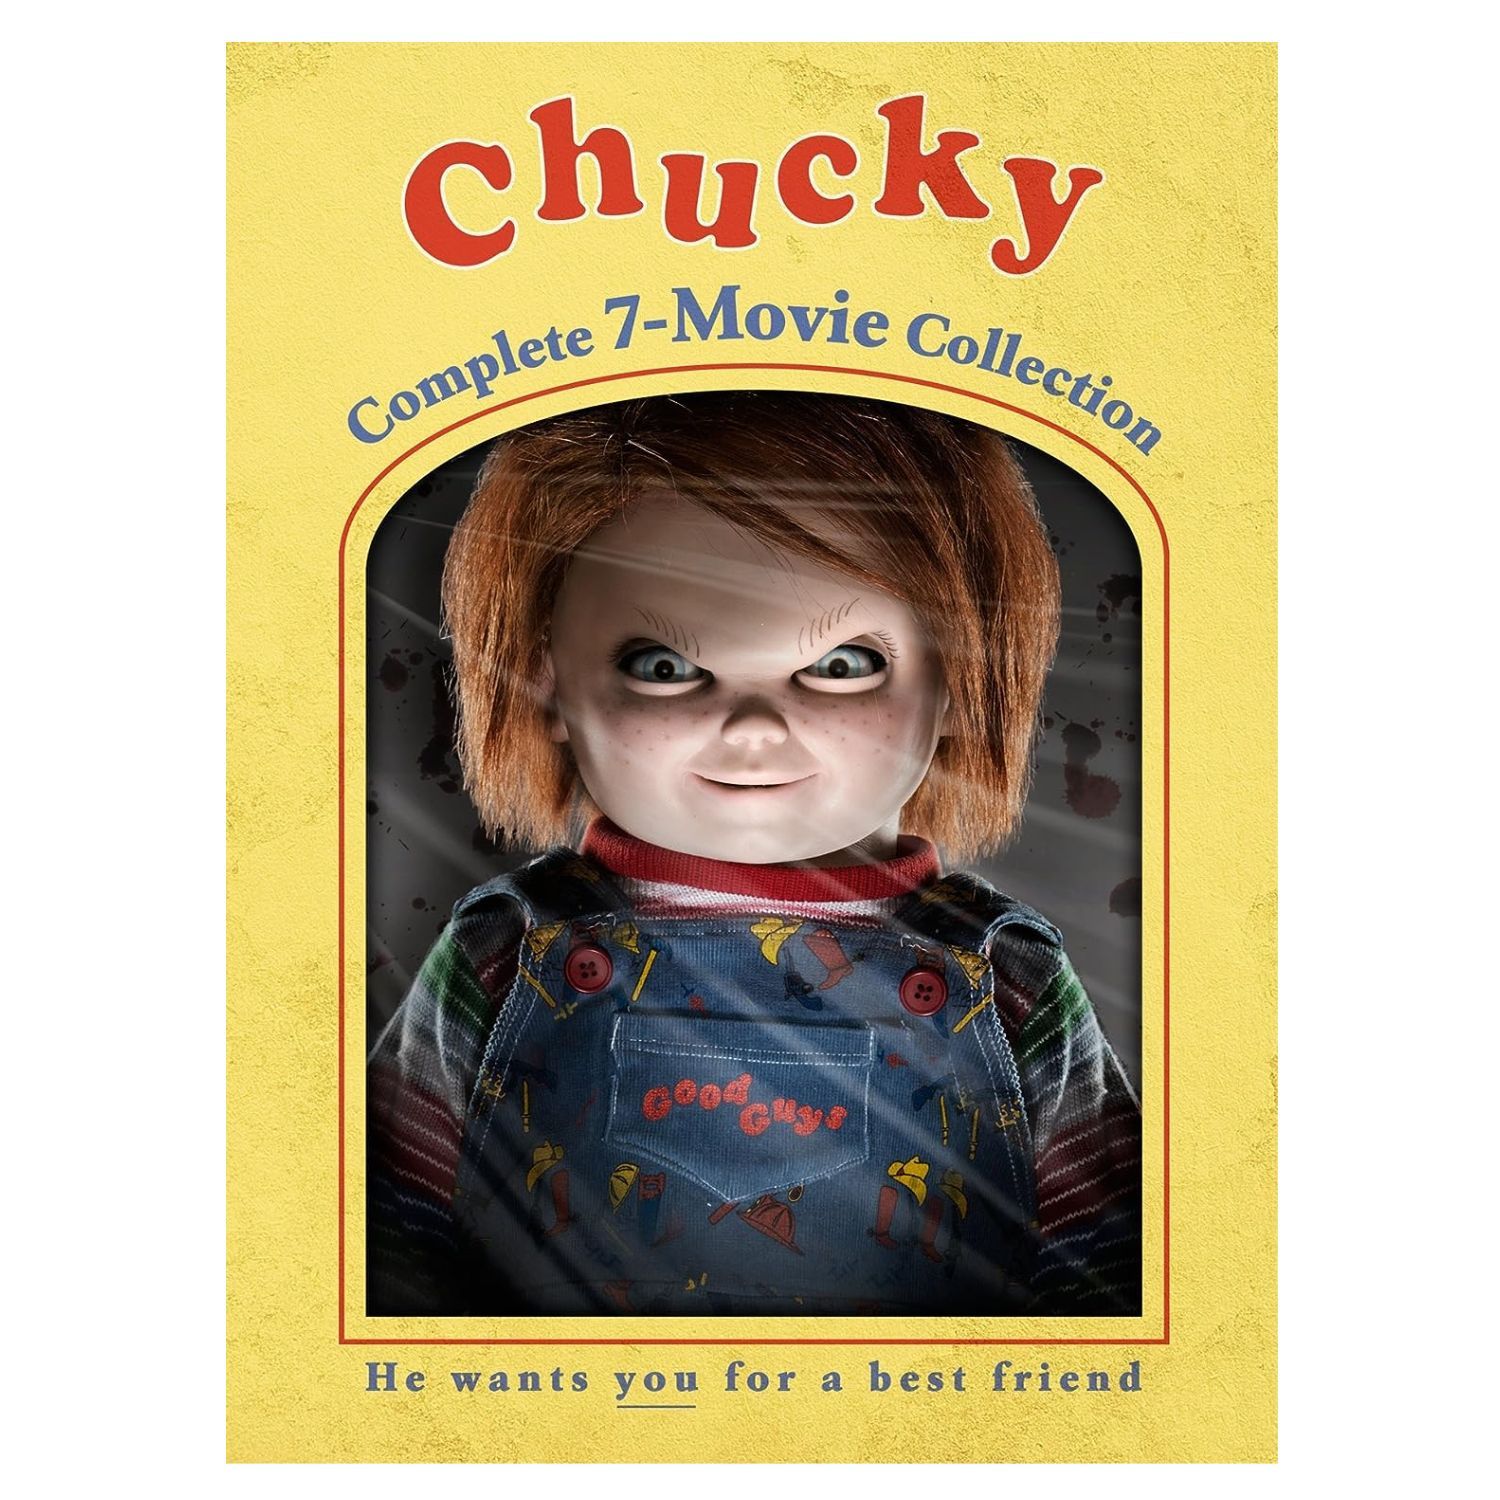 Chucky 7 movie collection